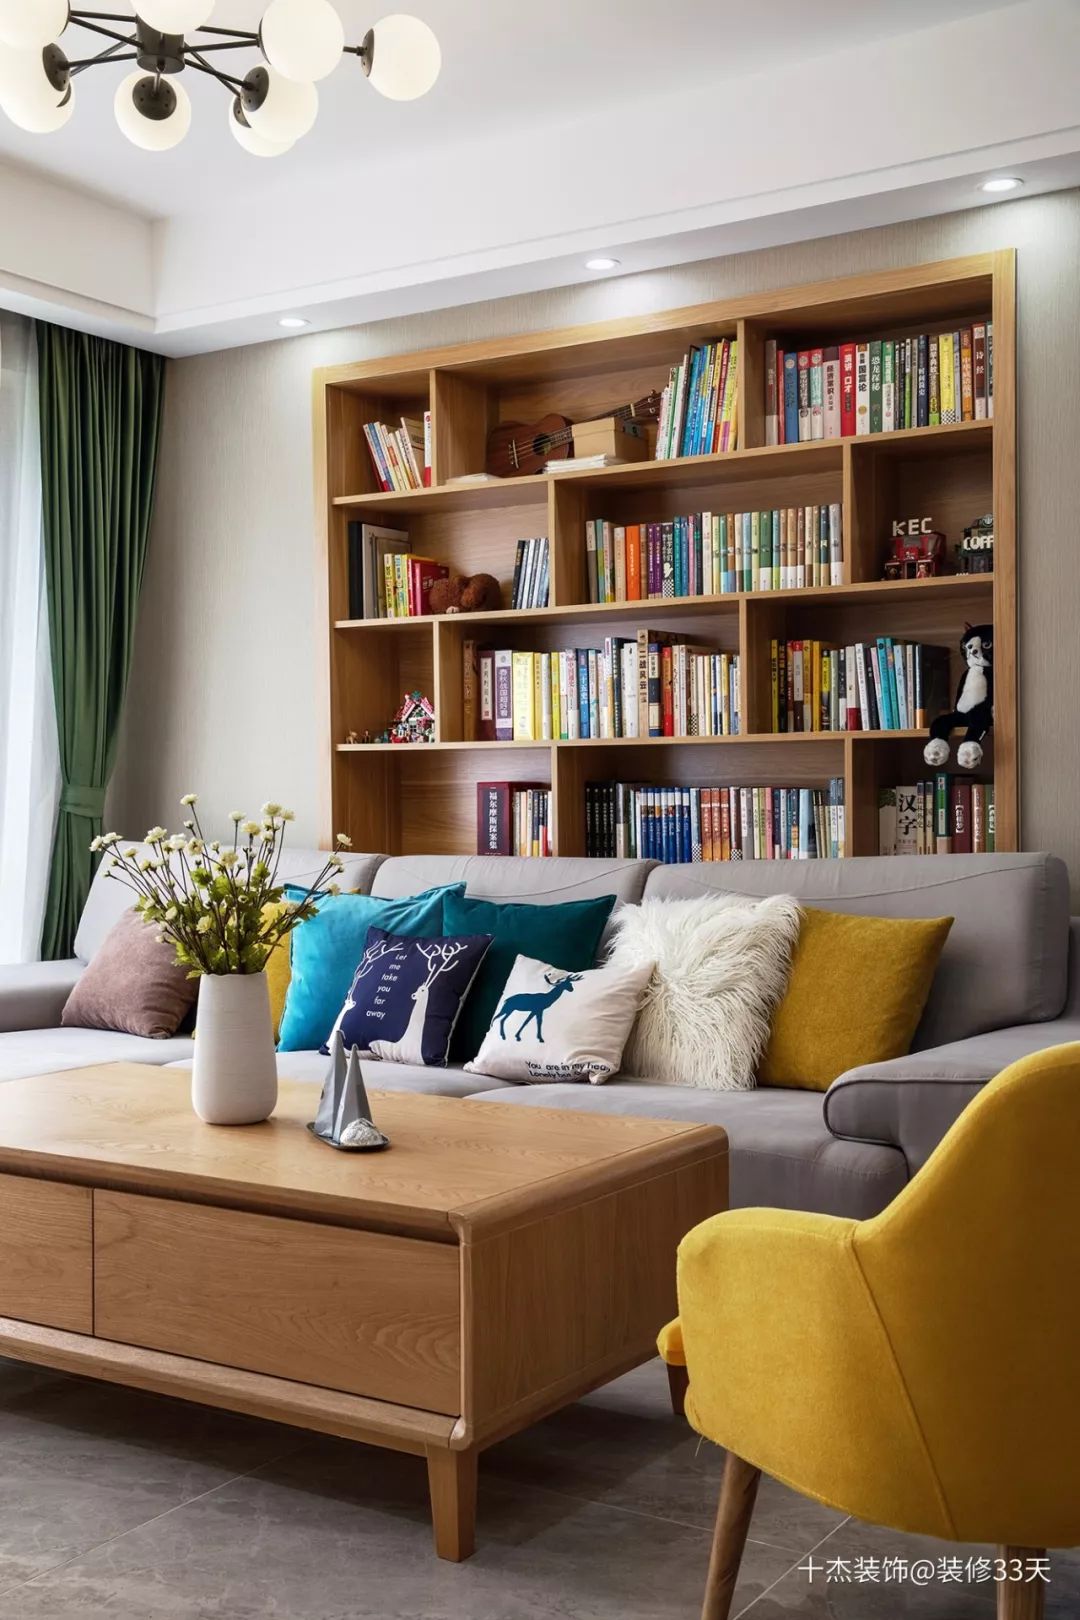 沙发背景设计开放式内嵌书架,方便收纳业主藏书与杂物,书架的设置